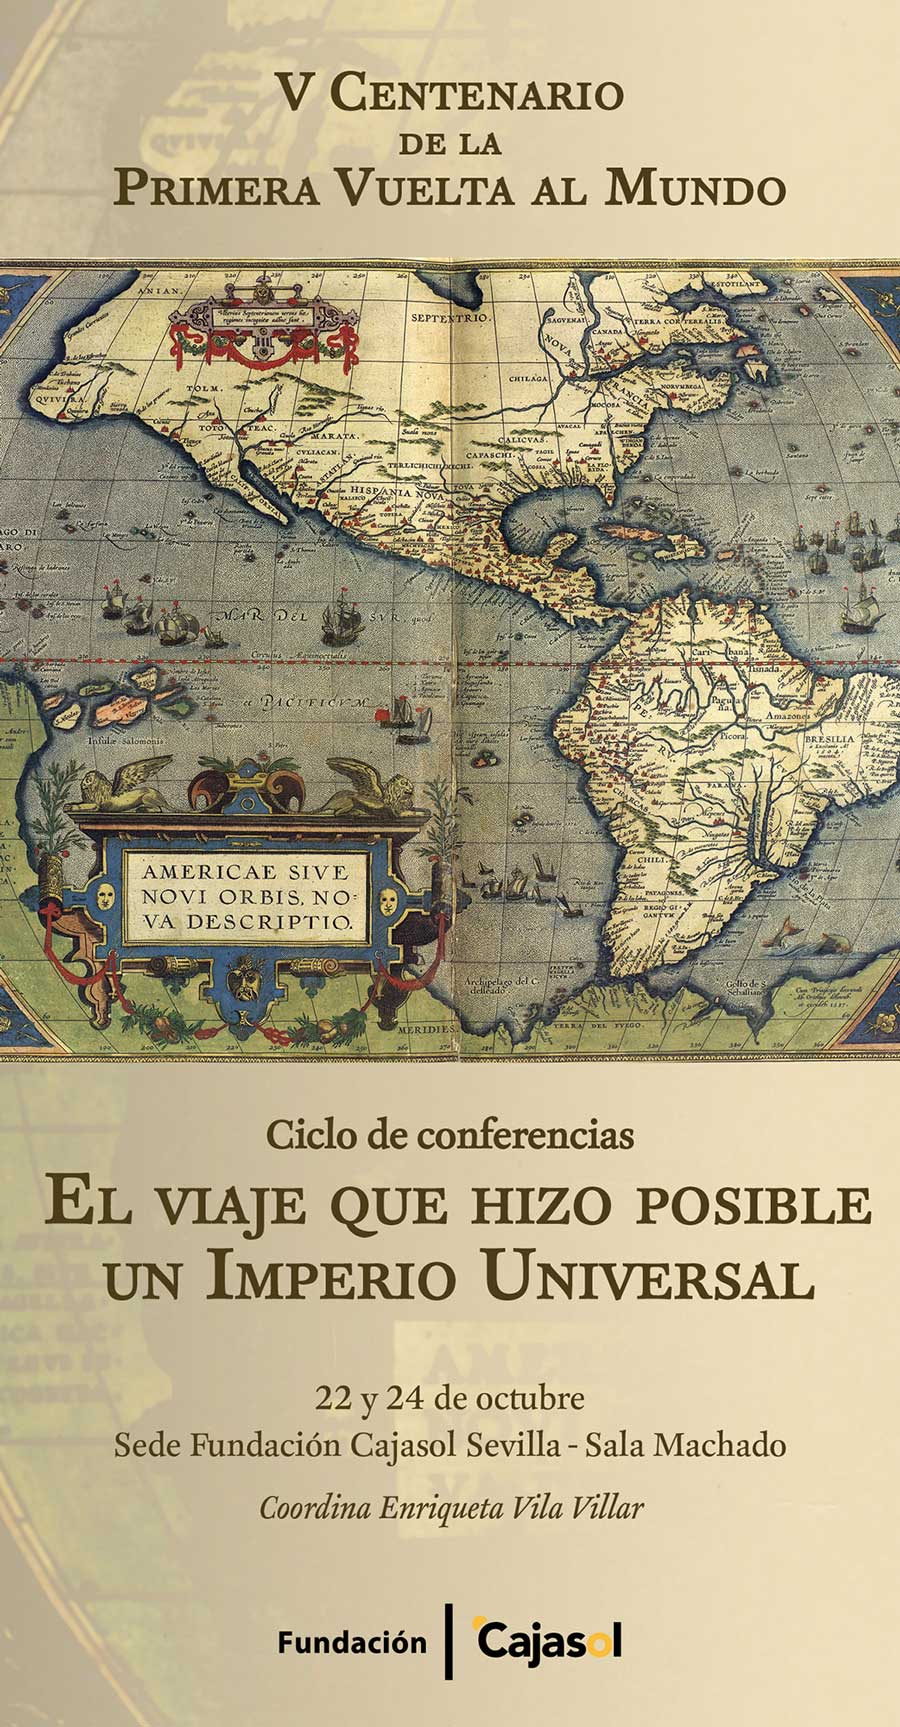 Cartel del ciclo de conferencias sobre Magallanes en Sevilla